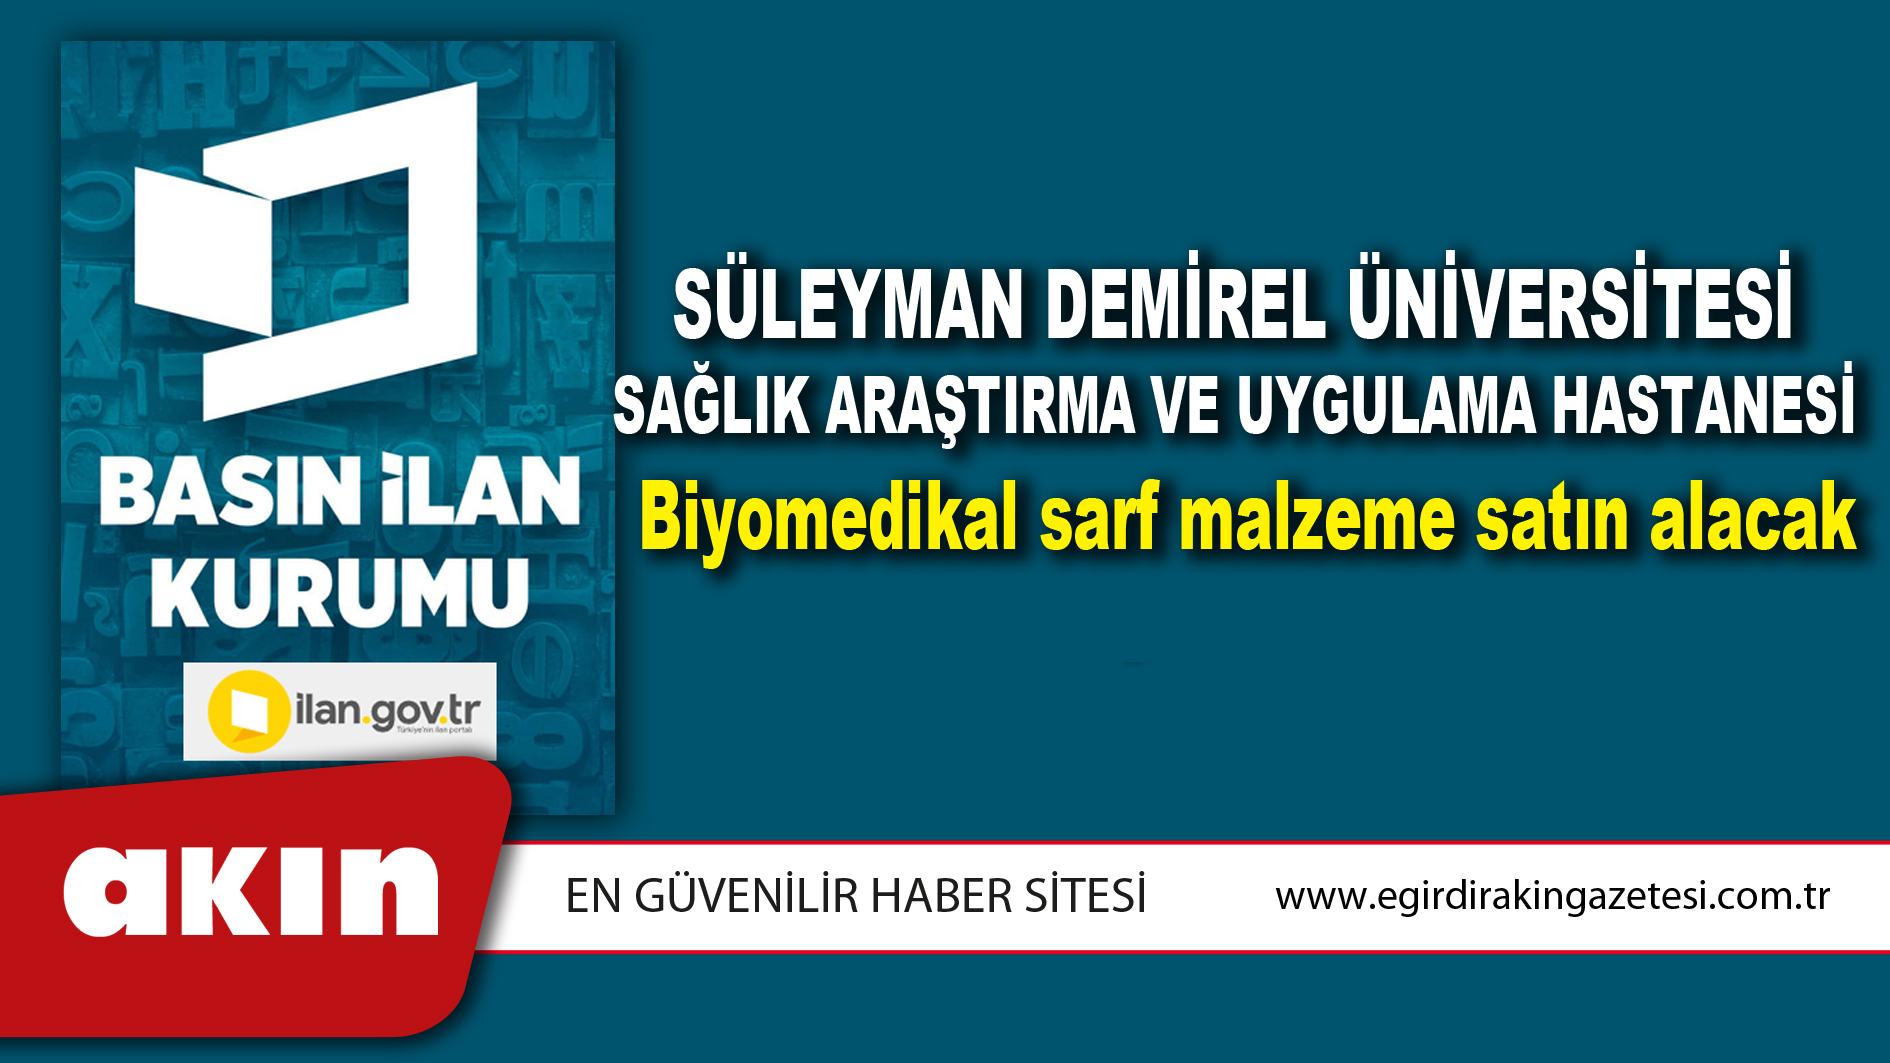 Süleyman Demirel Üniversitesi Sağlık Araştırma ve Uygulama Hastanesi Biyomedikal sarf malzeme satın alacak